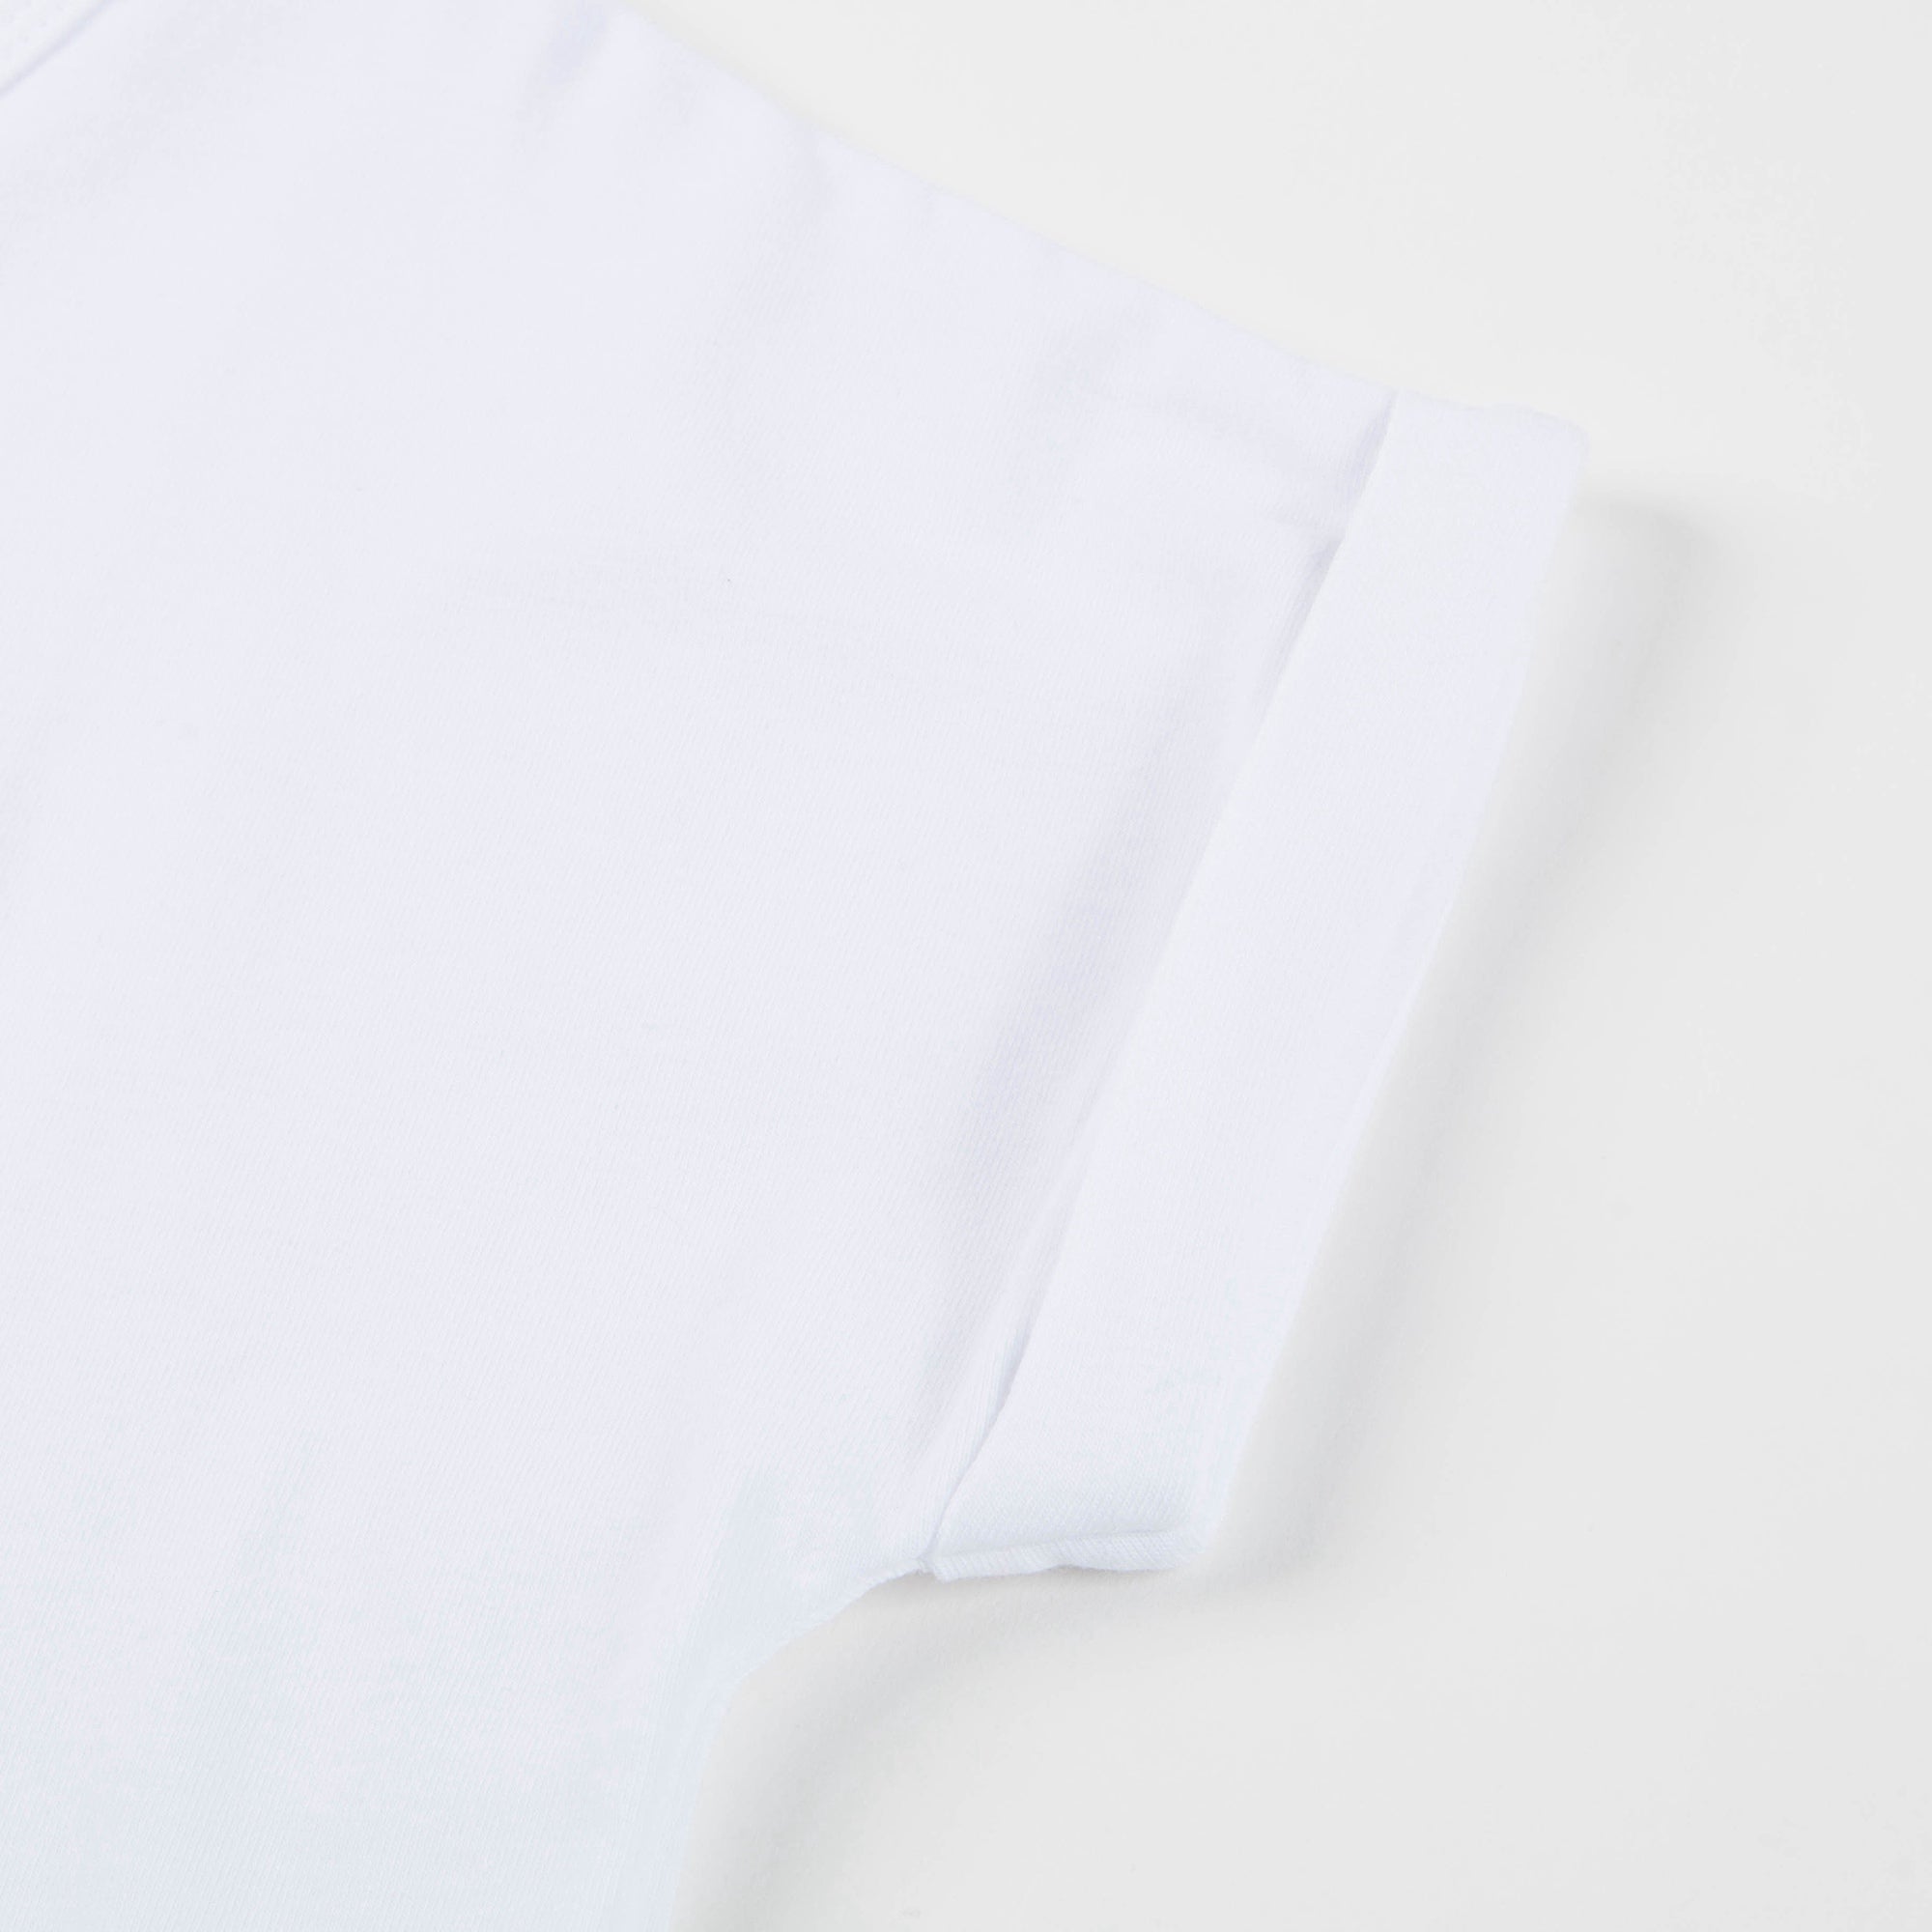 Girls White Tiger Printed Cotton T-shirt